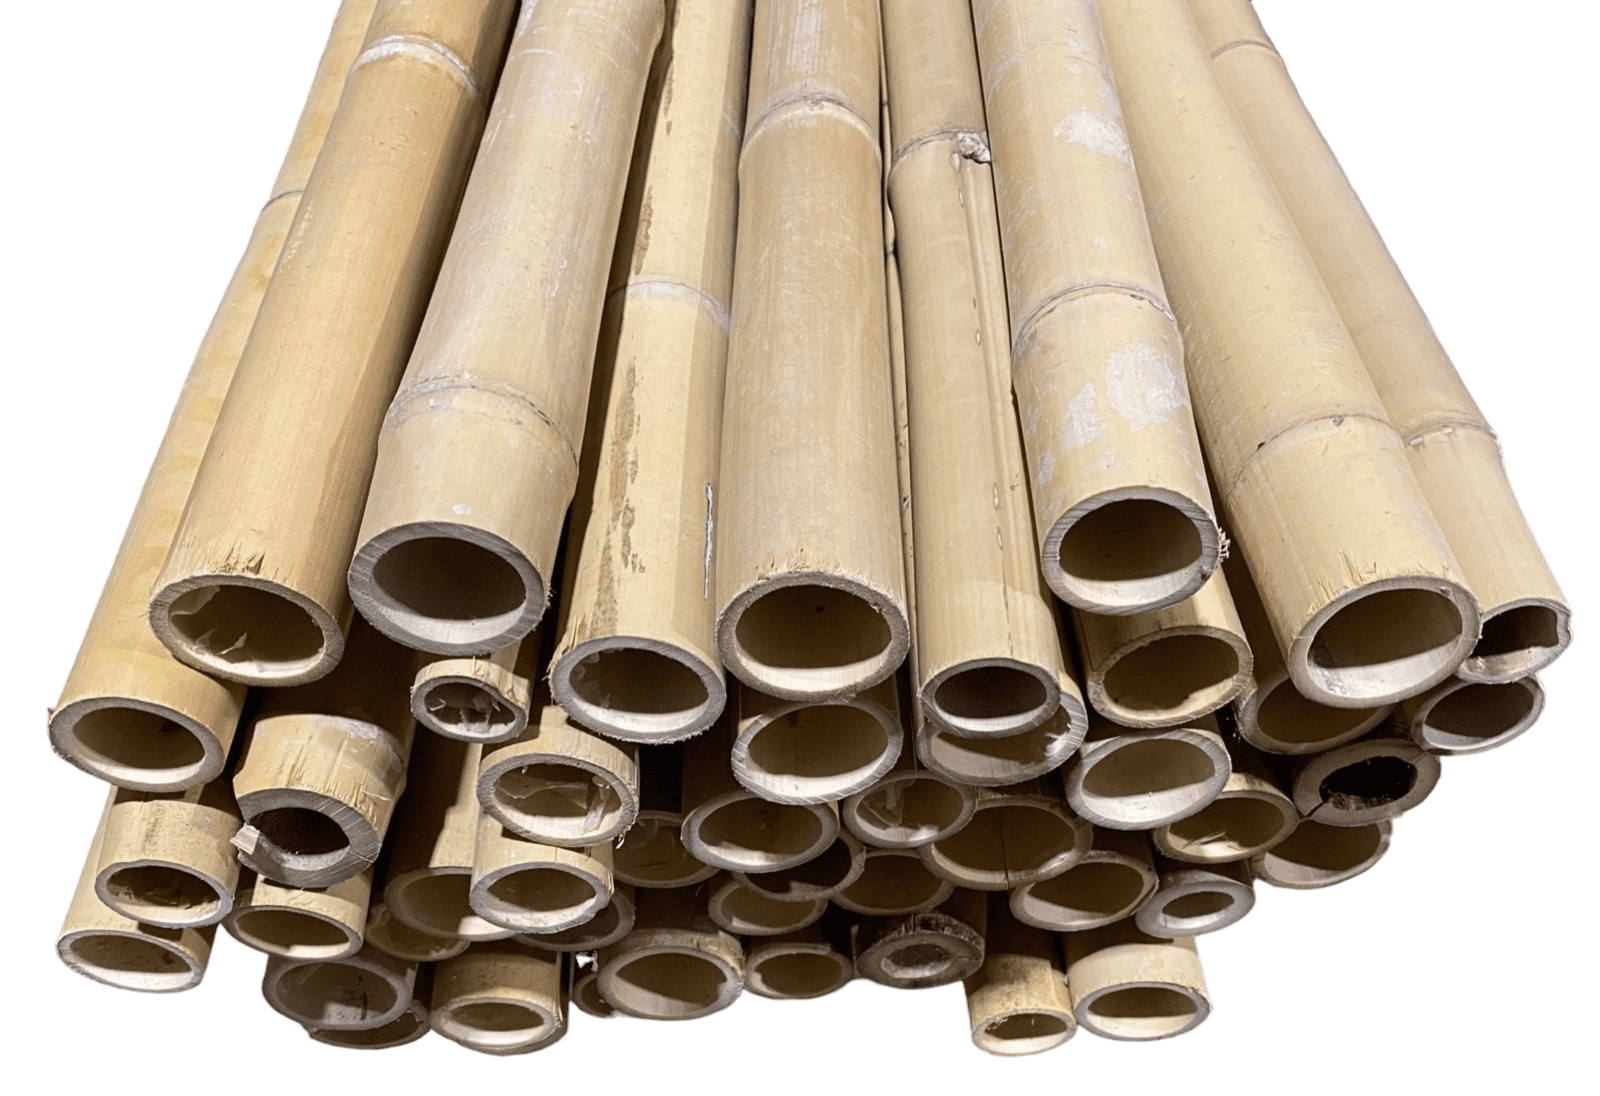 5.5 Feet Long Natural Thin Bamboo Poles Pack of 20!